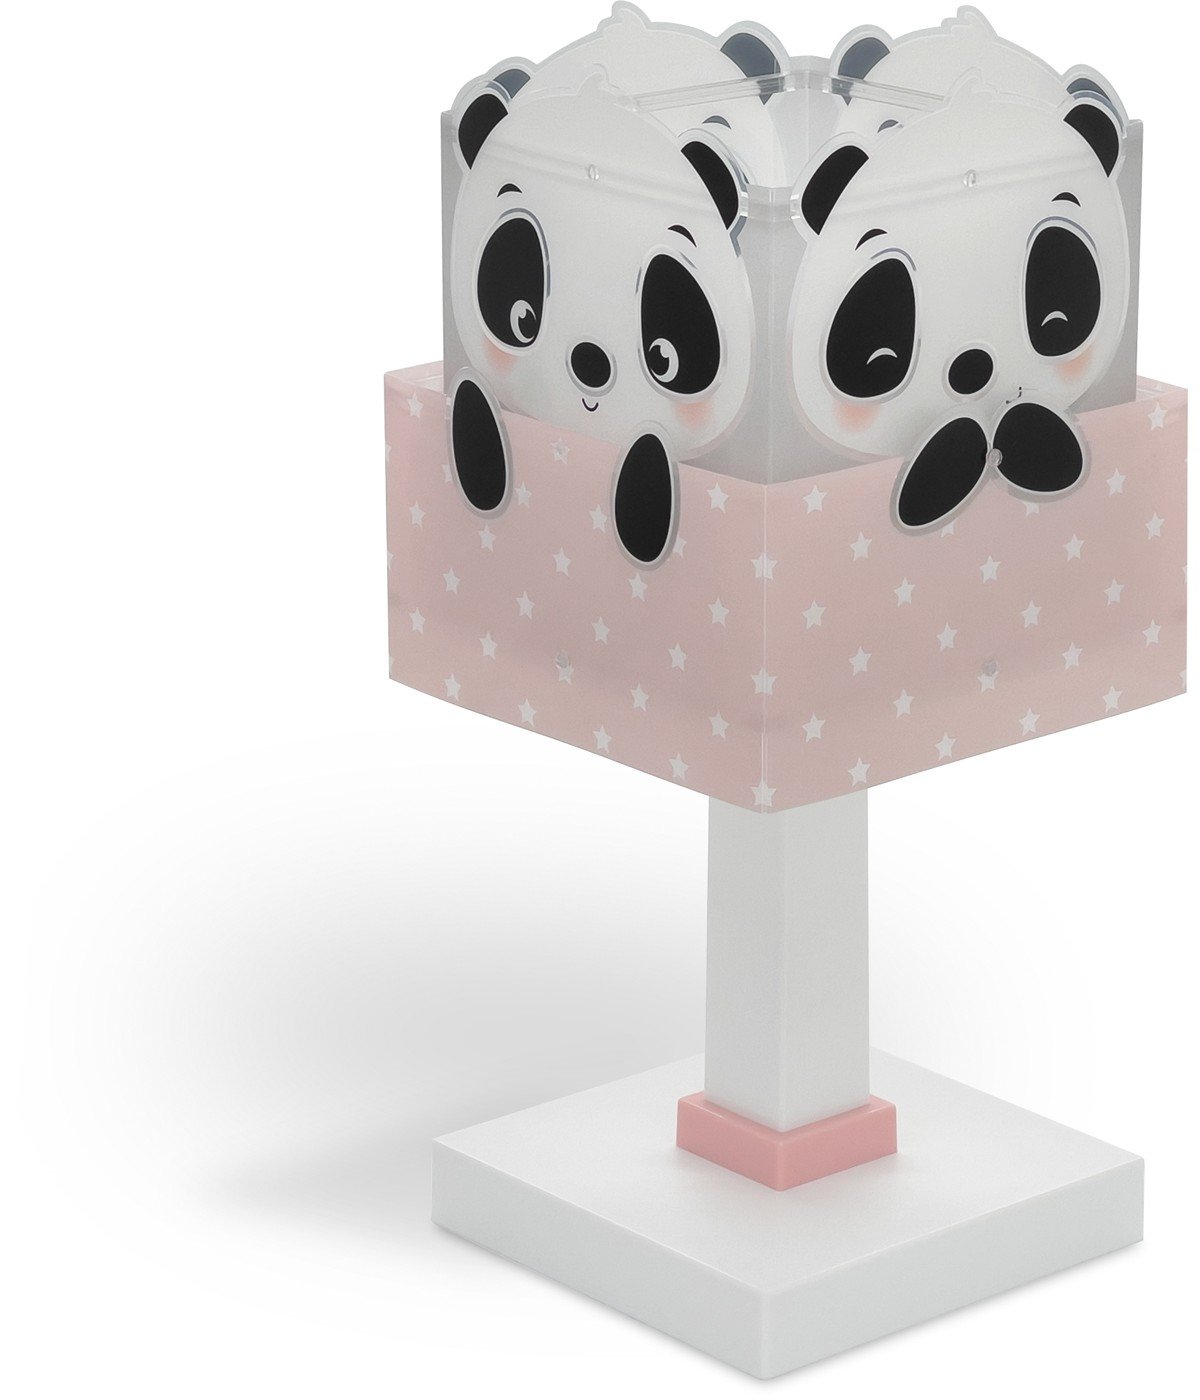 Lampe de chevet pour enfants Panda rose